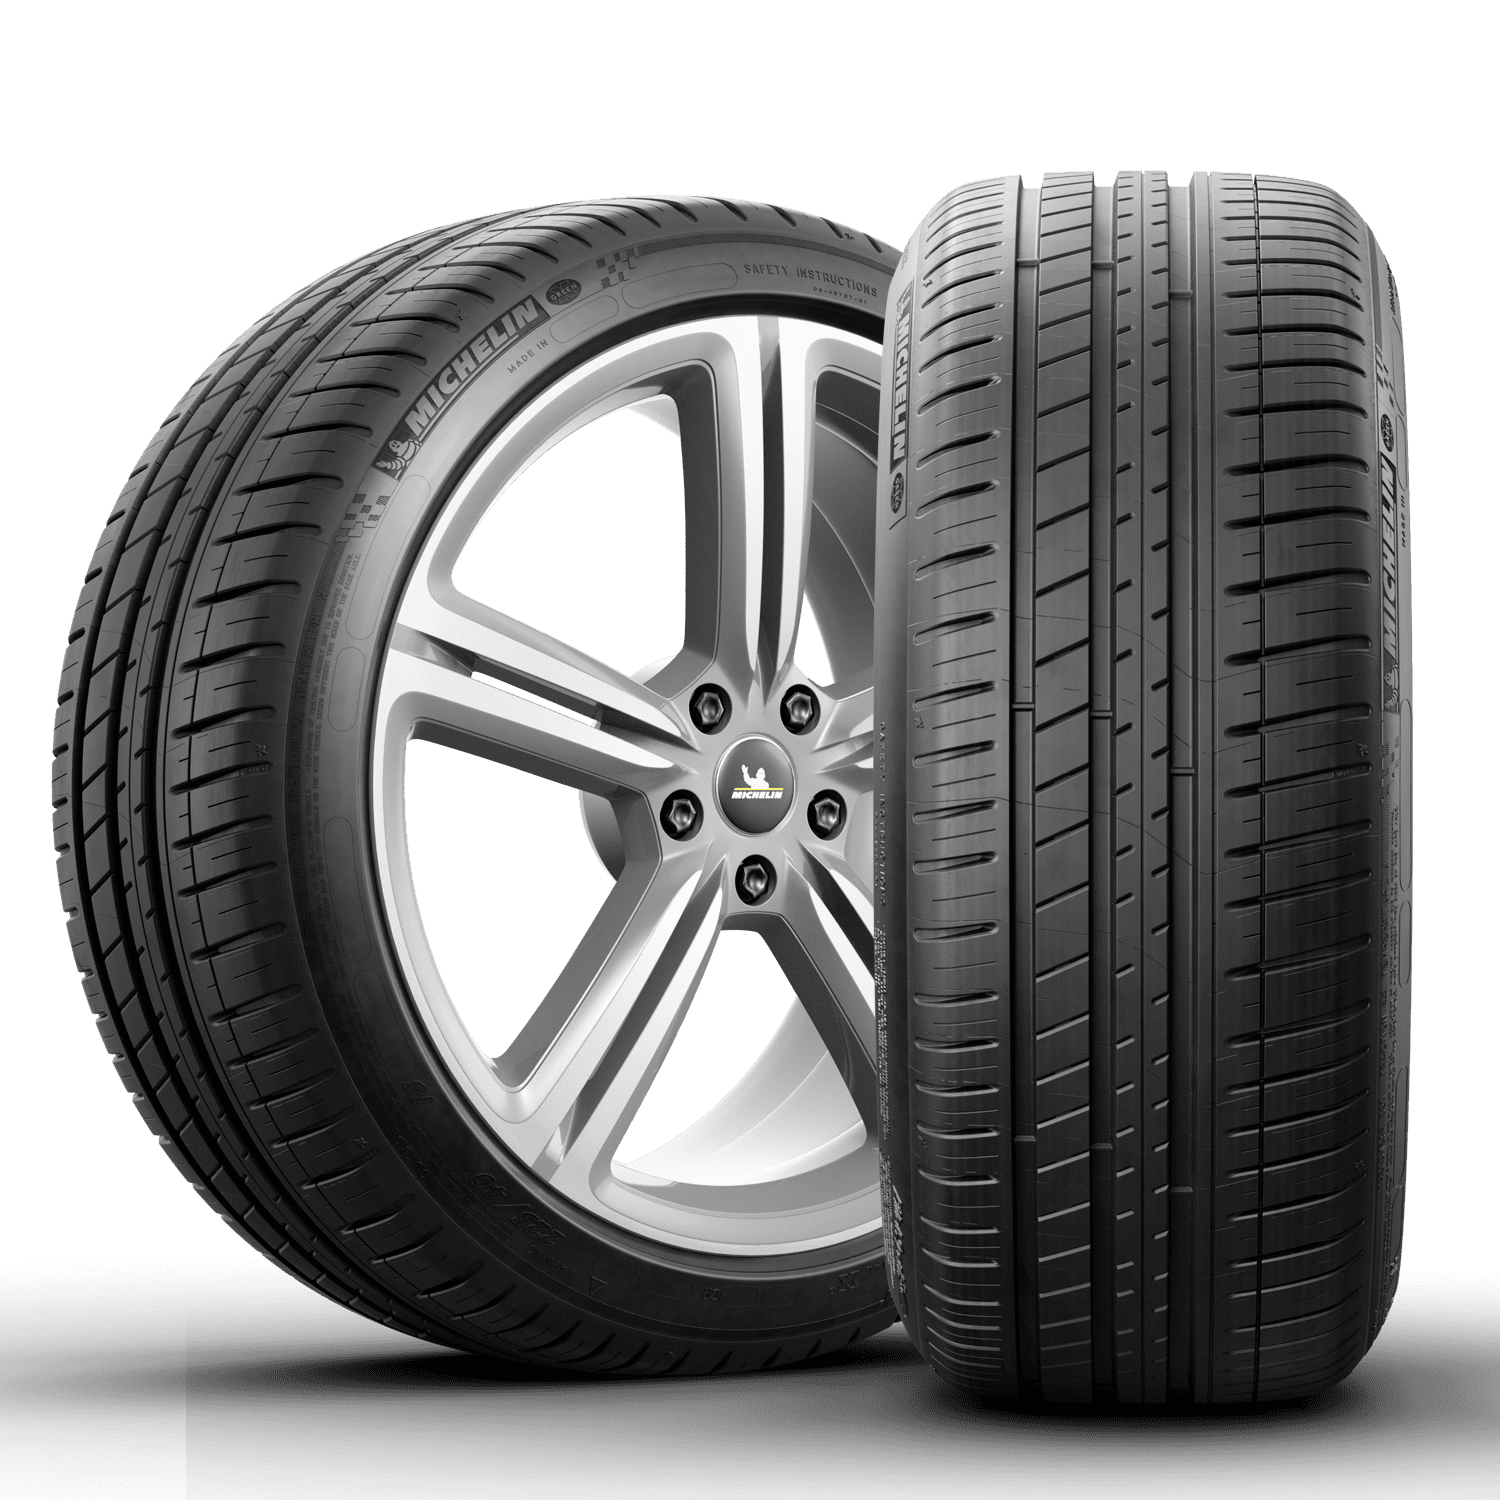 Michelin Pilot Sport 3 Summer 215/45R17/XL 91W Tire